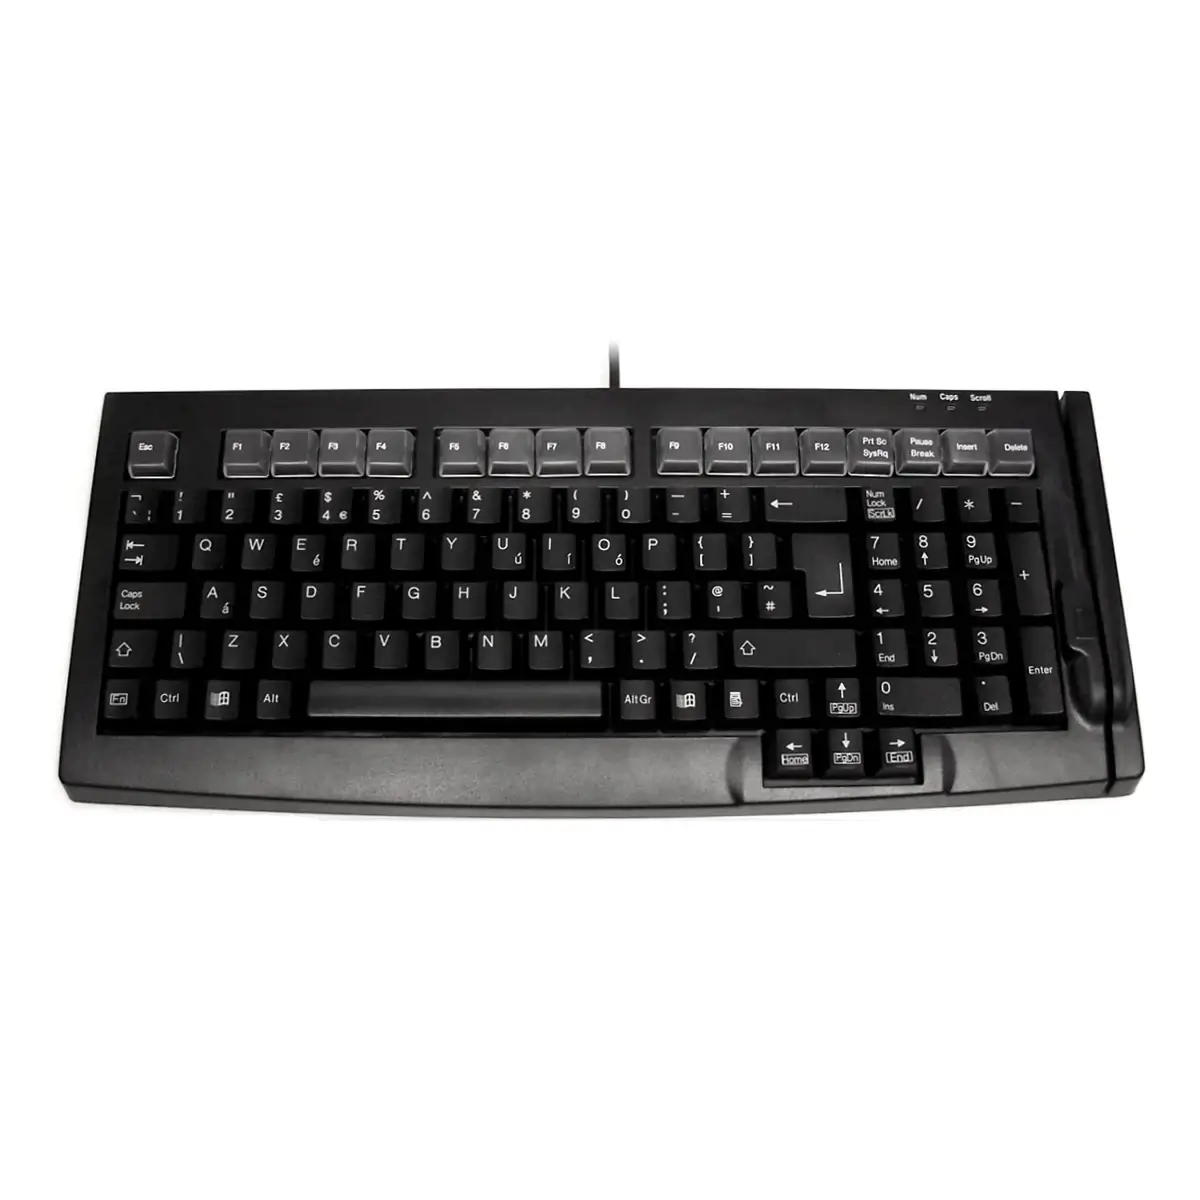 Ceratech S100B Keyboard